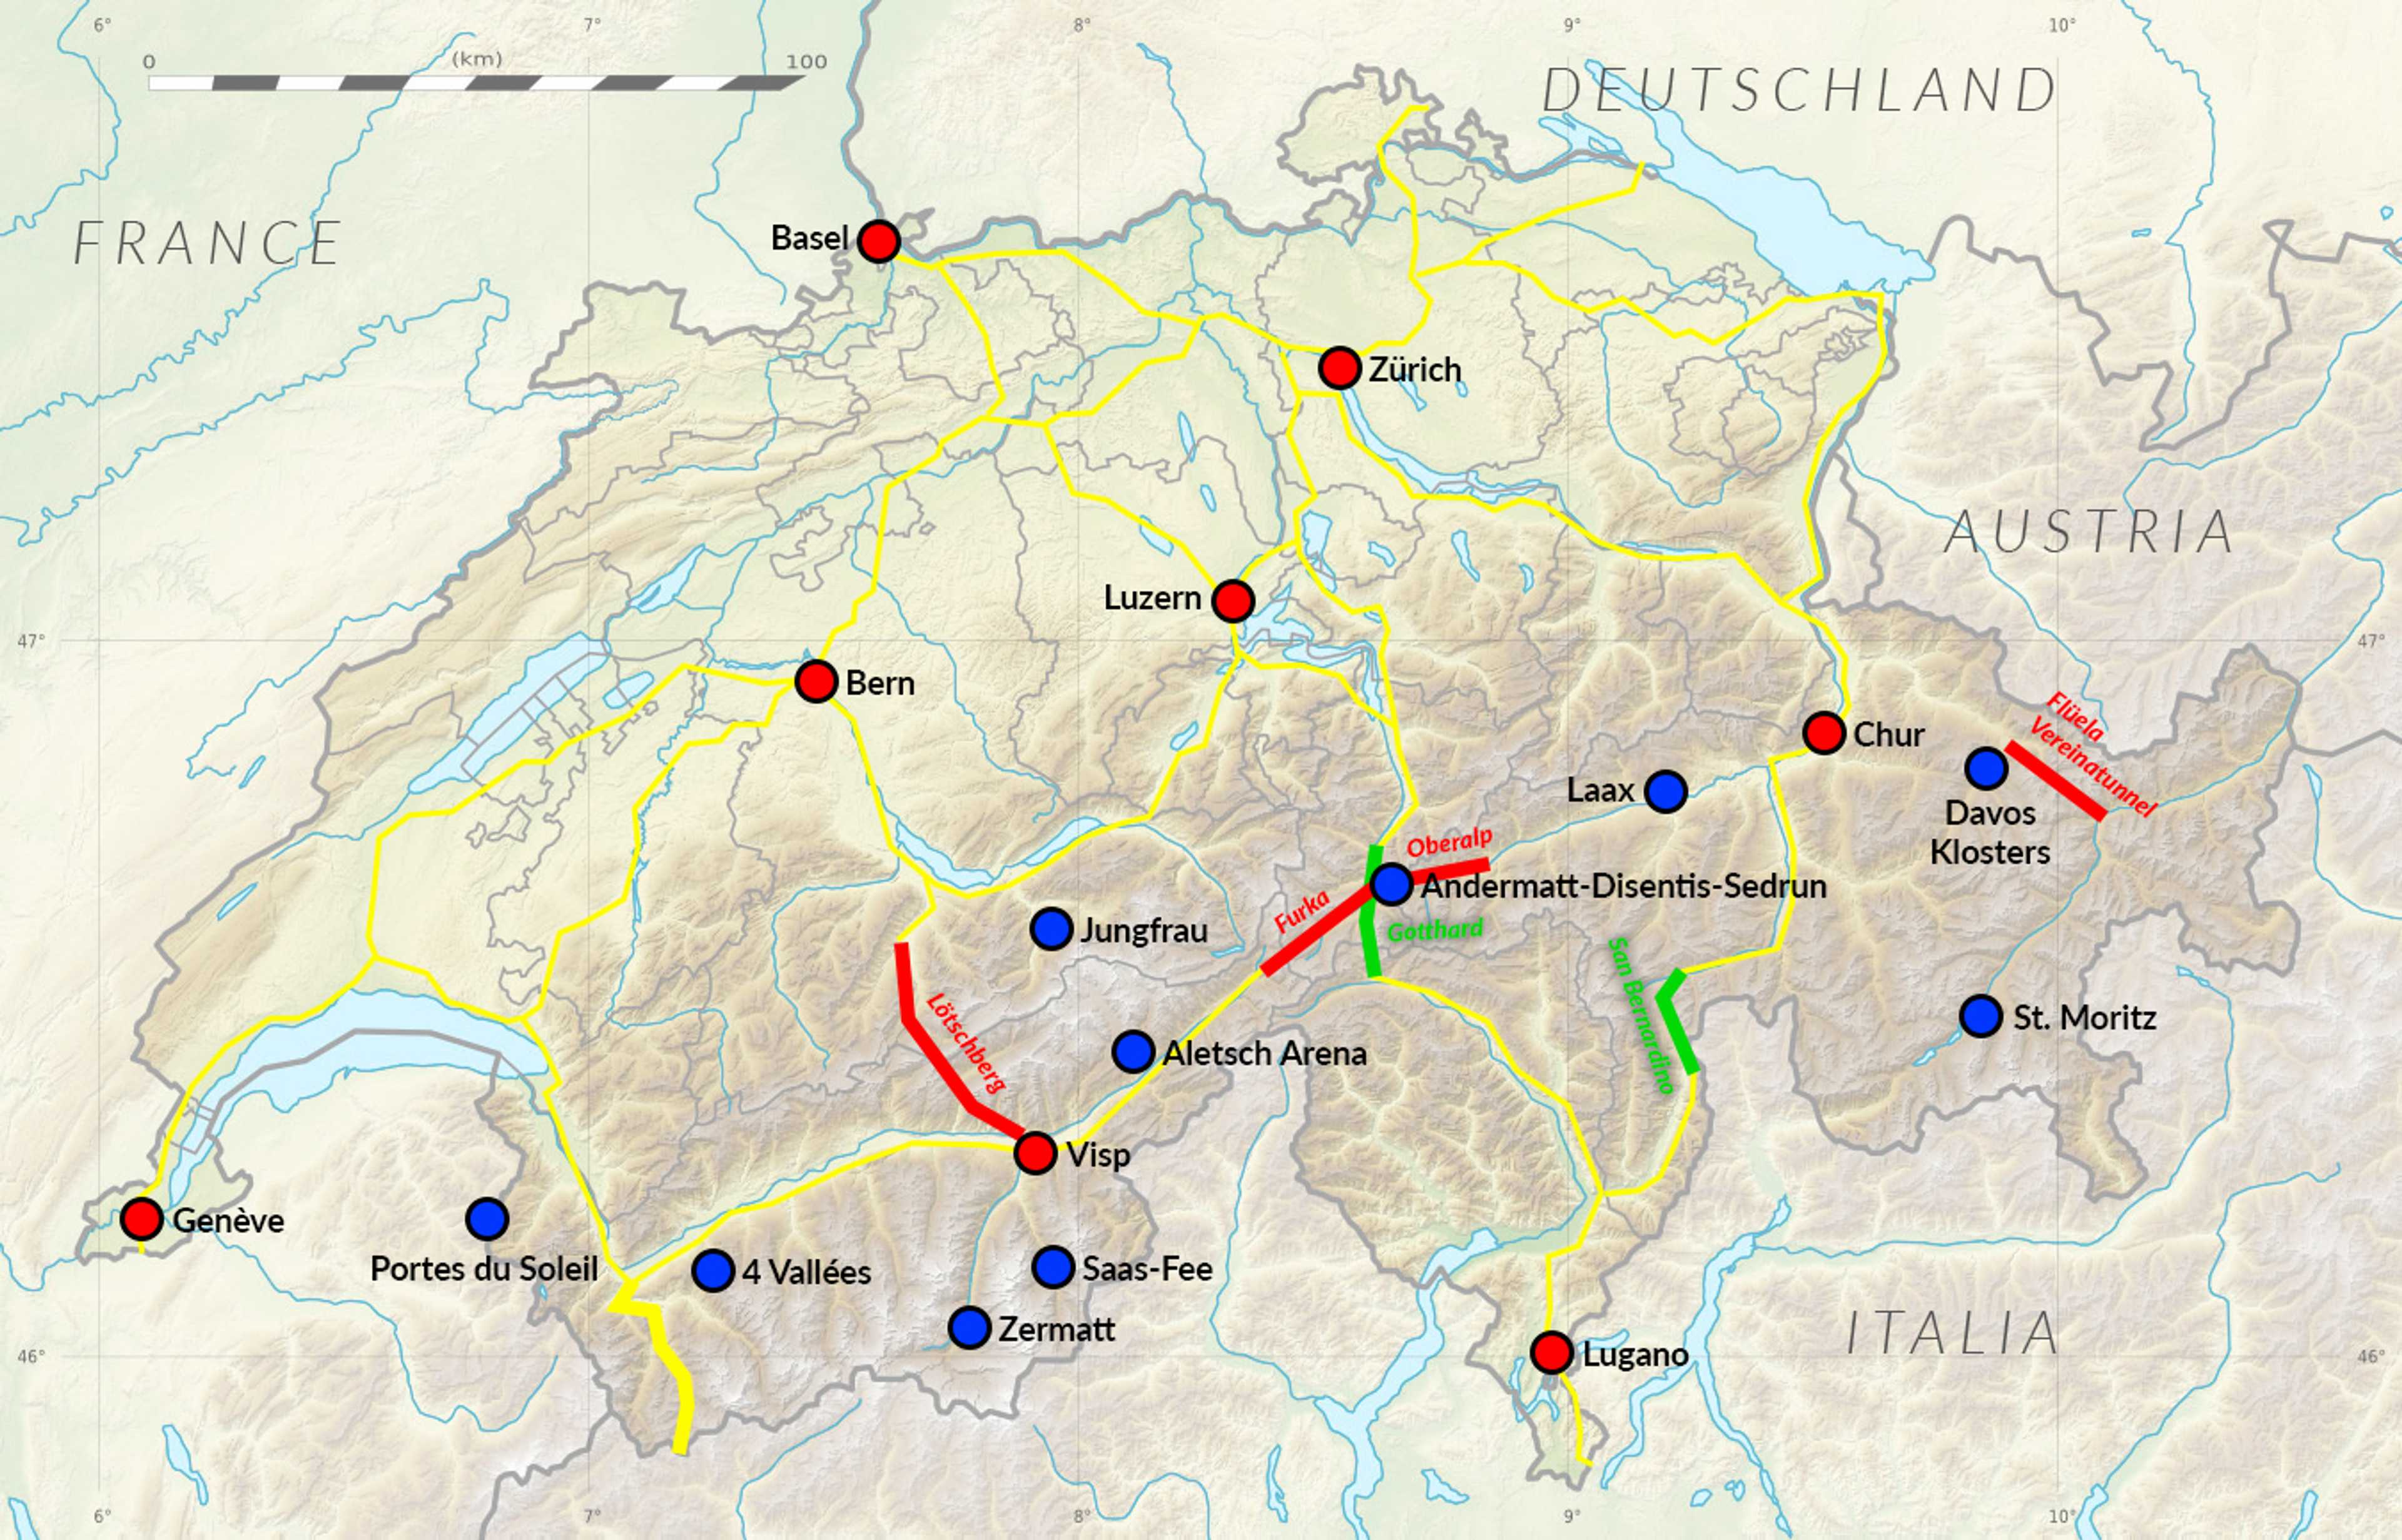 Orientacyjny schemat głównych dróg (żółte), tuneli samochodowych (zielone) i przepraw pociągiem (czerwone) w Szwajcarii